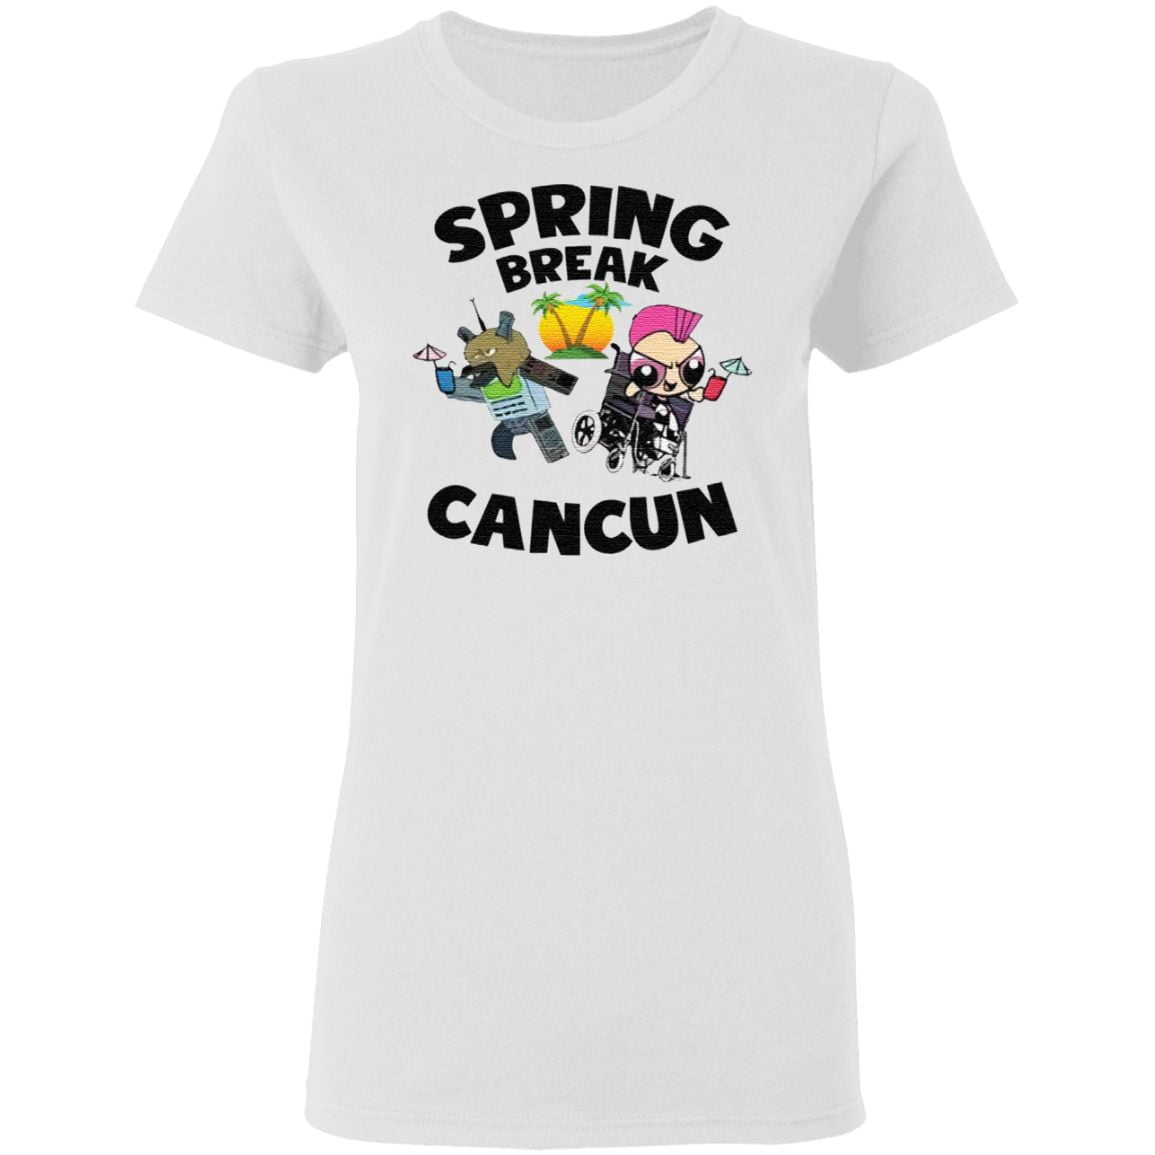 Powerpuff girls spring break cancun t shirt